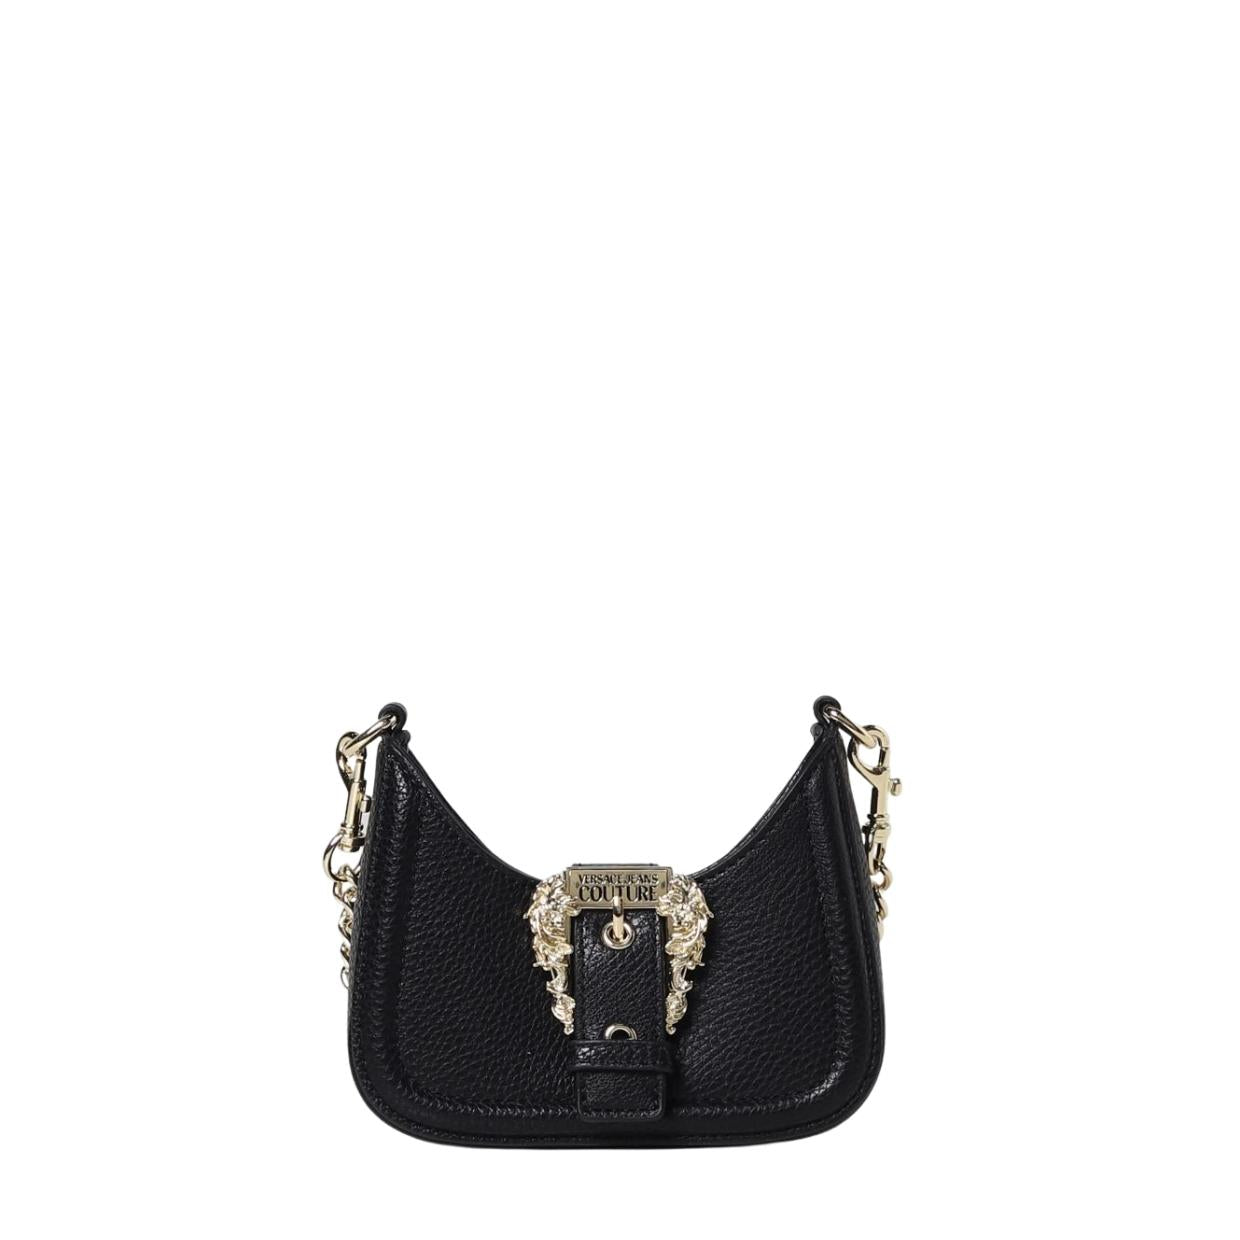 Totes bags Versace - Black leather girl shoulder bag - 10079421A056601B00V